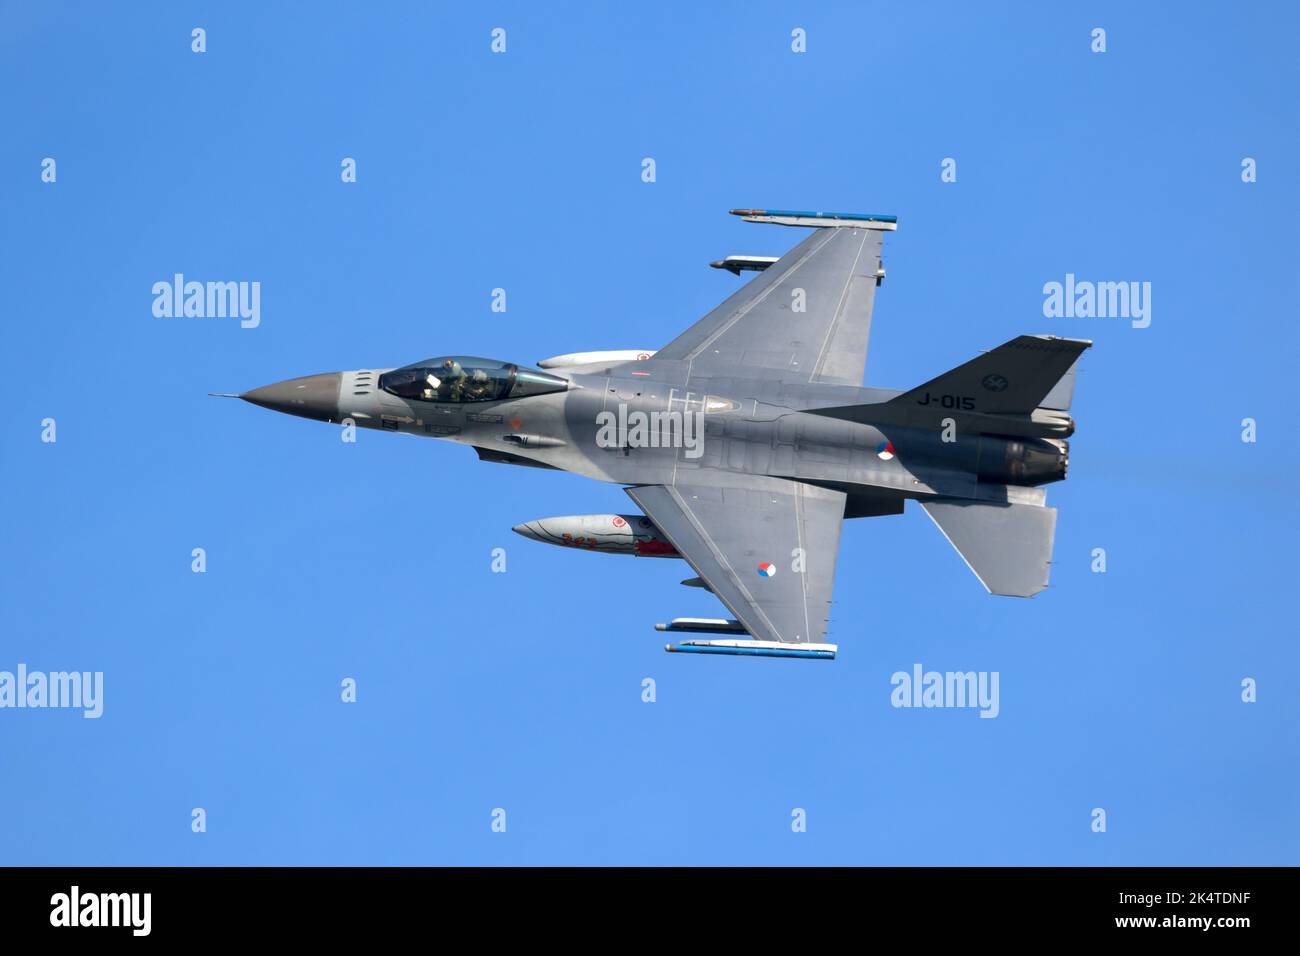 Avion de chasse F-16 de la Royal Netherlands Air Force en vol à la base aérienne de Leeuwarden. Pays-Bas - 19 avril 2018 Banque D'Images